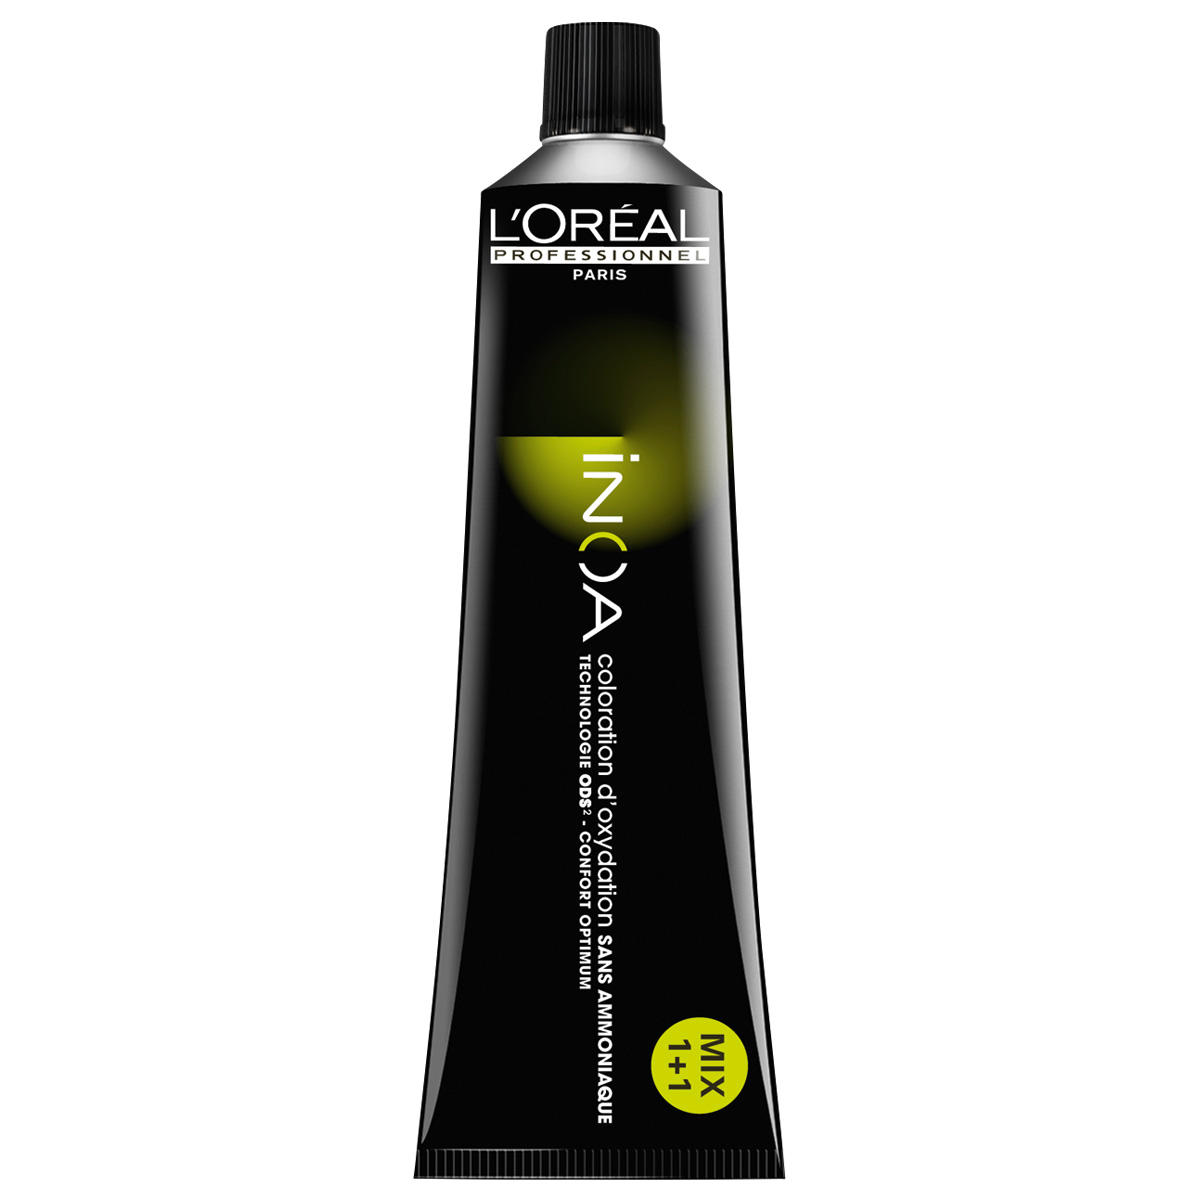 L'Oréal Professionnel Paris Coloration 10½,22 Biondo platino chiaro profondo Irisé, tubo 60 ml